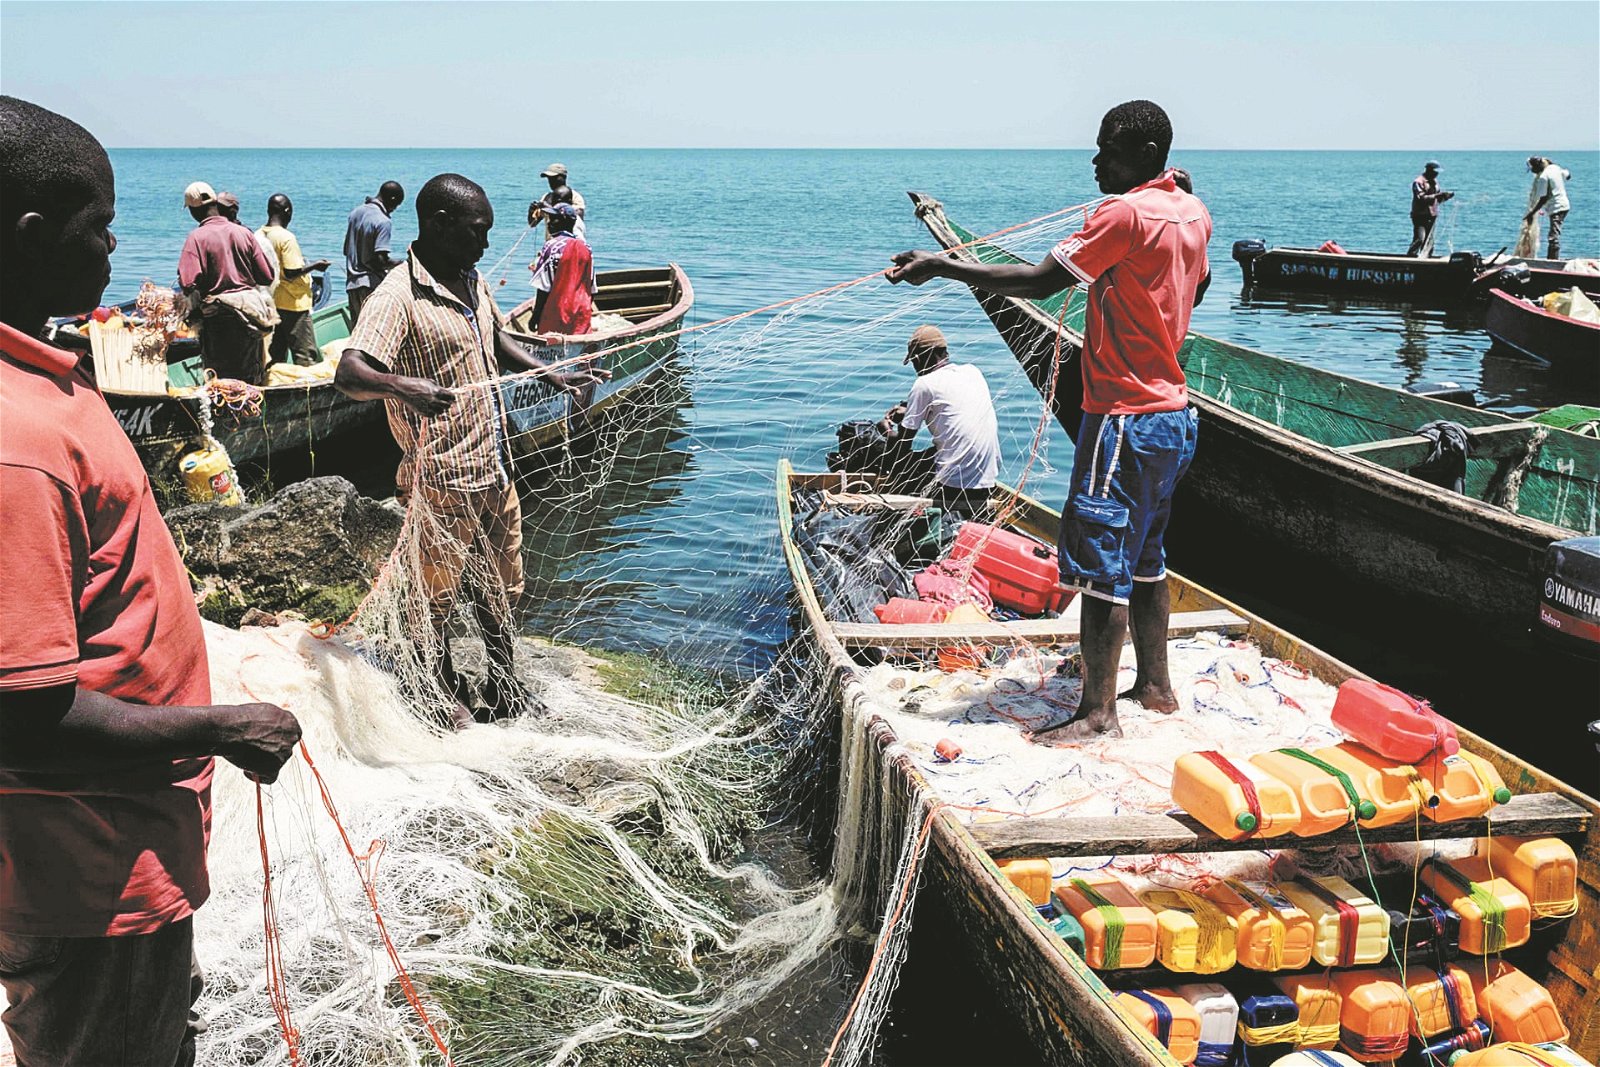 岛上渔民在渔船上整理渔网，准备出海捕鱼。米金戈岛的居民主要是渔民和鱼商，渔民工作一周的收入，据称是非洲本地工人工作约两三个月的收入。但随著过度捕捞，渔获不断减少，渔民的收入也受到影响。